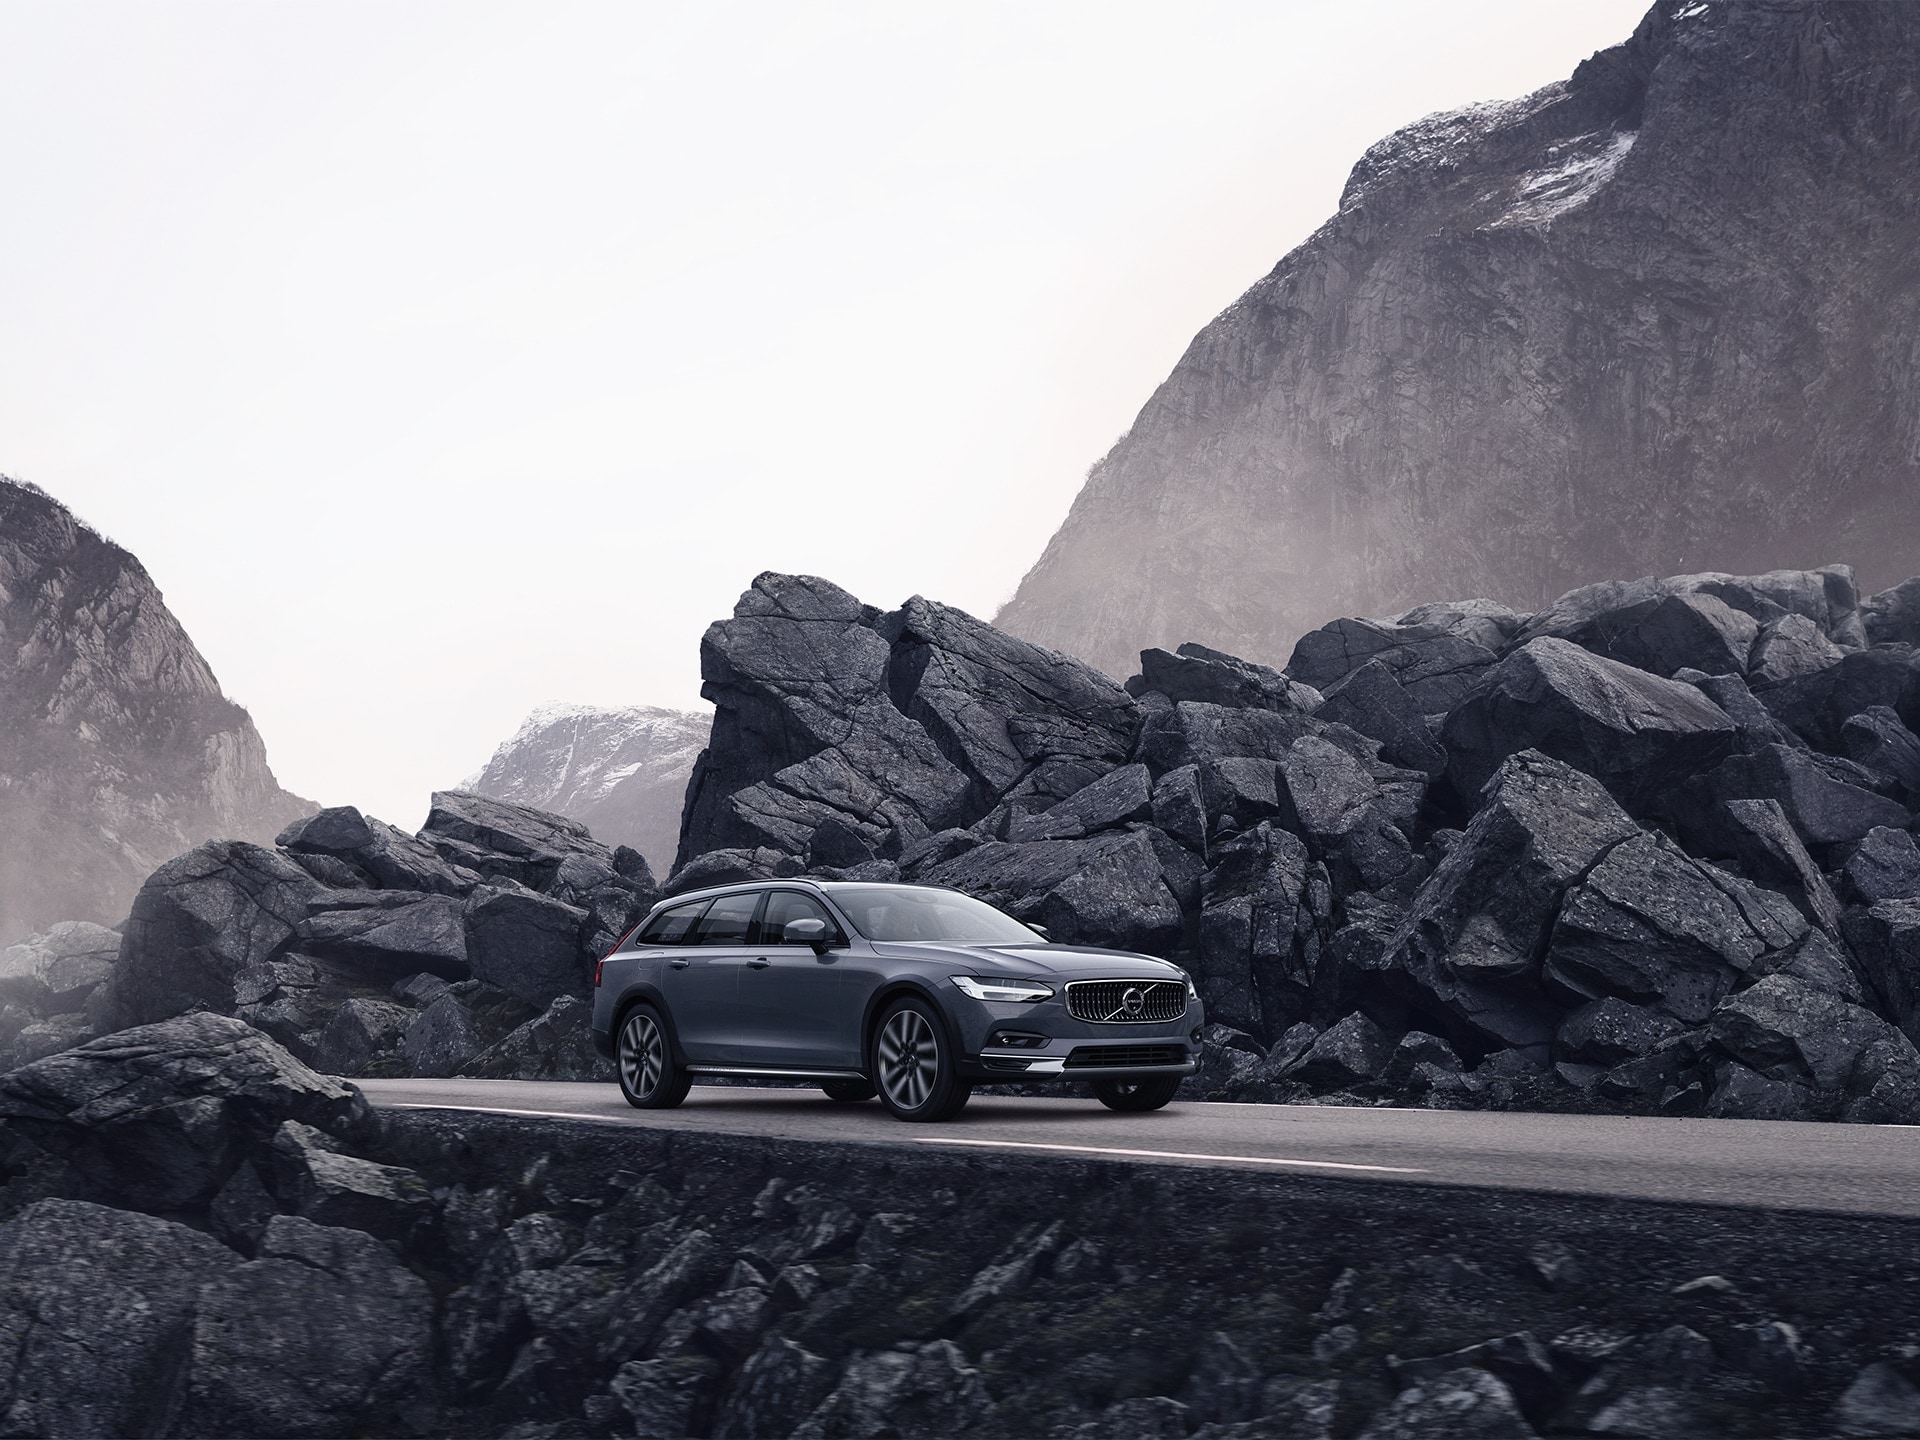 Pelēkas krāsas Volvo brauc pa ceļu ar akmeņiem ceļa malā